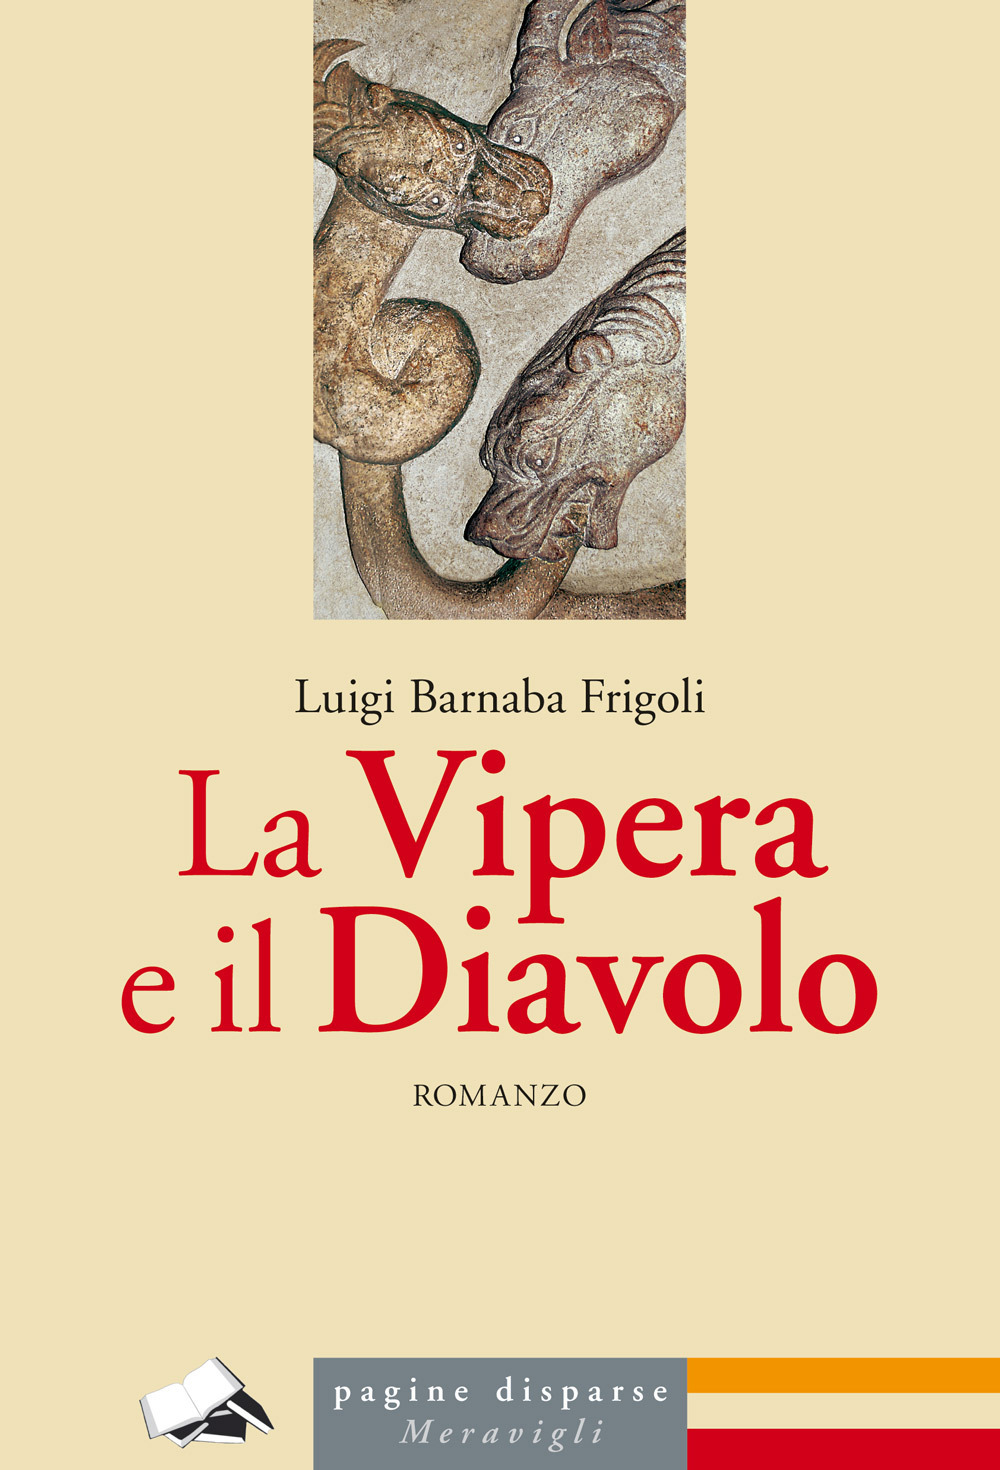 Libri Frigoli Luigi Barnaba - La Vipera E Il Diavolo NUOVO SIGILLATO, EDIZIONE DEL 07/07/2022 SUBITO DISPONIBILE